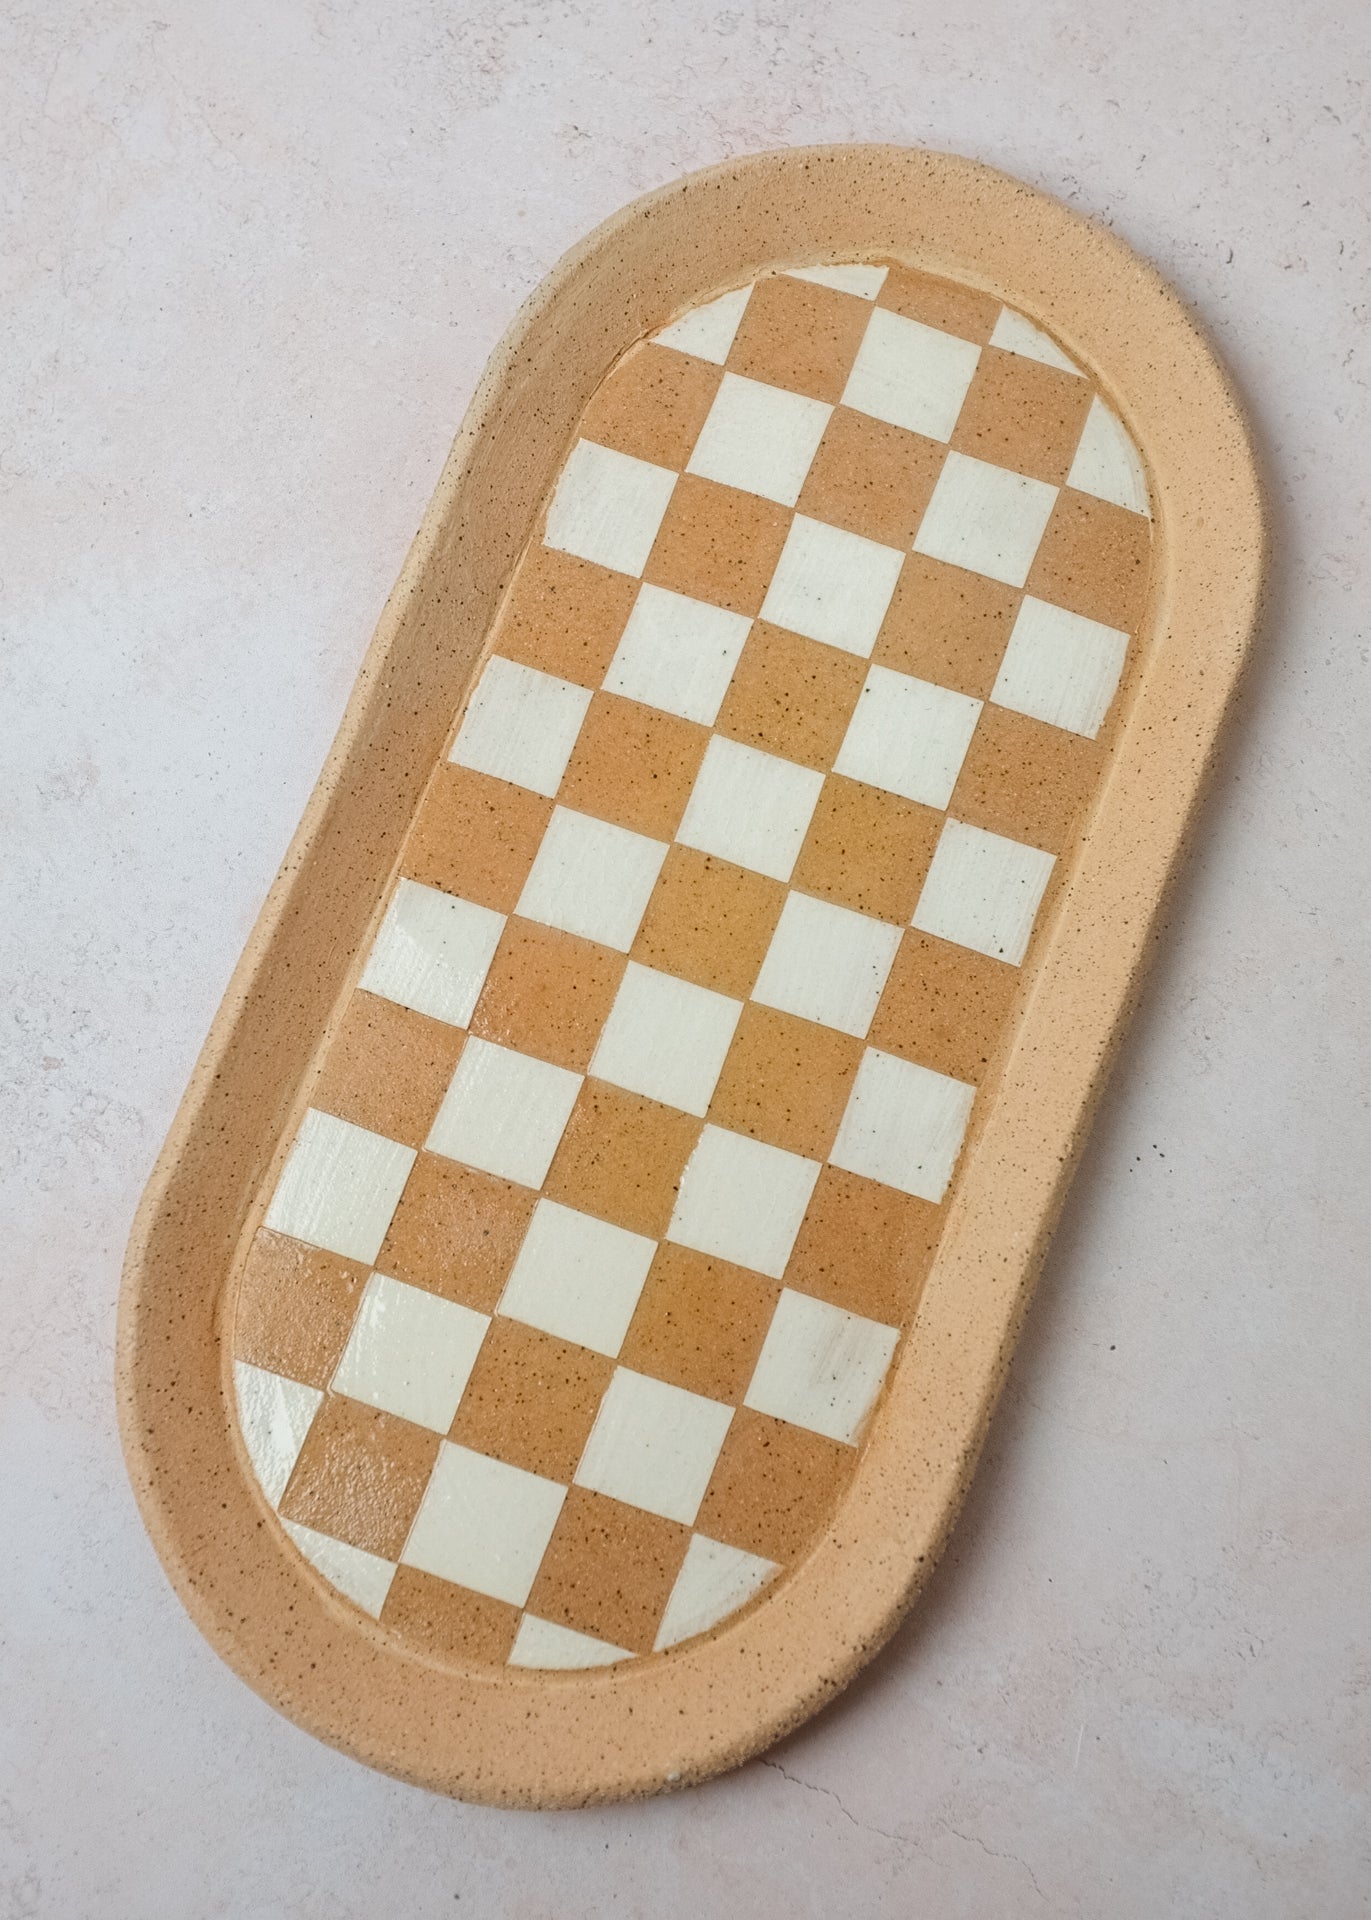 Checkered Tray